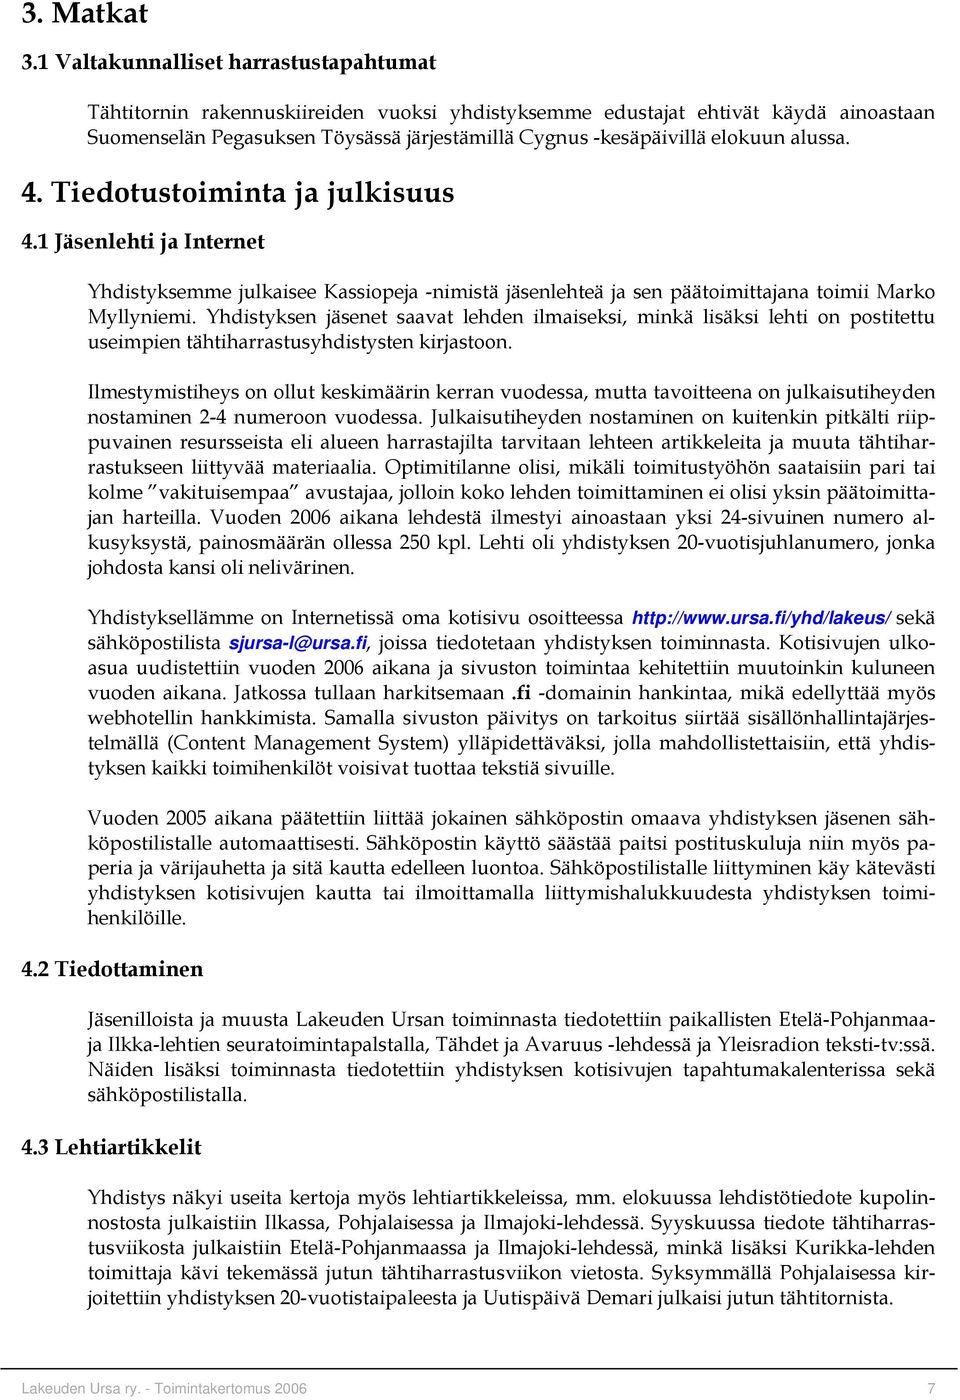 alussa. 4. Tiedotustoiminta ja julkisuus 4.1 Jäsenlehti ja Internet Yhdistyksemme julkaisee Kassiopeja -nimistä jäsenlehteä ja sen päätoimittajana toimii Marko Myllyniemi.